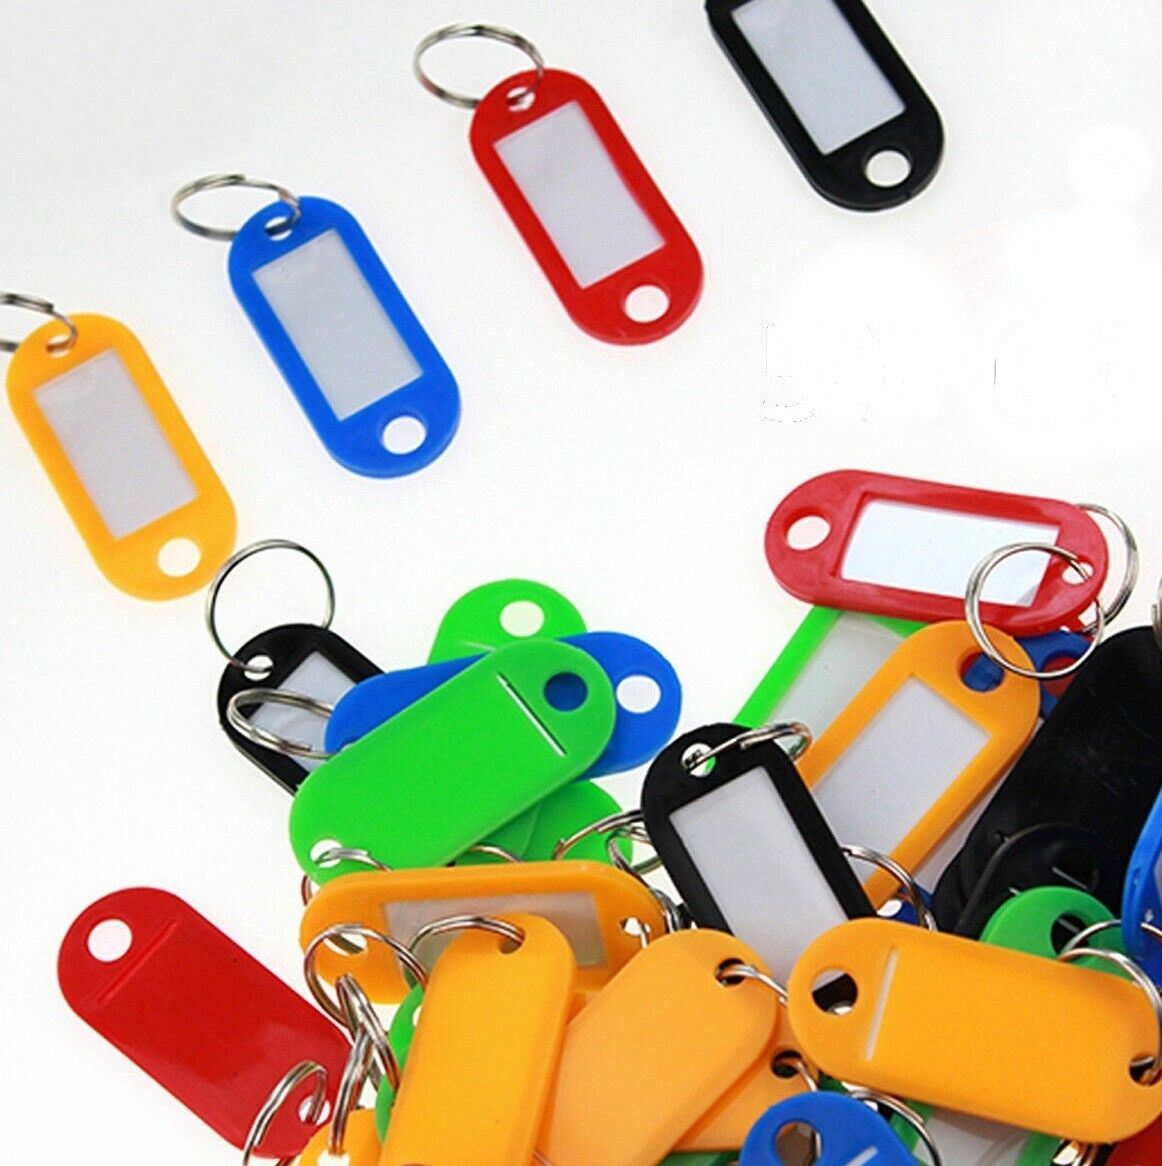 50 Pcs Plastic Key Tags Id Label Name Luggage Car Tags Split Ring Baggage Chains Без бренда - фотография #4